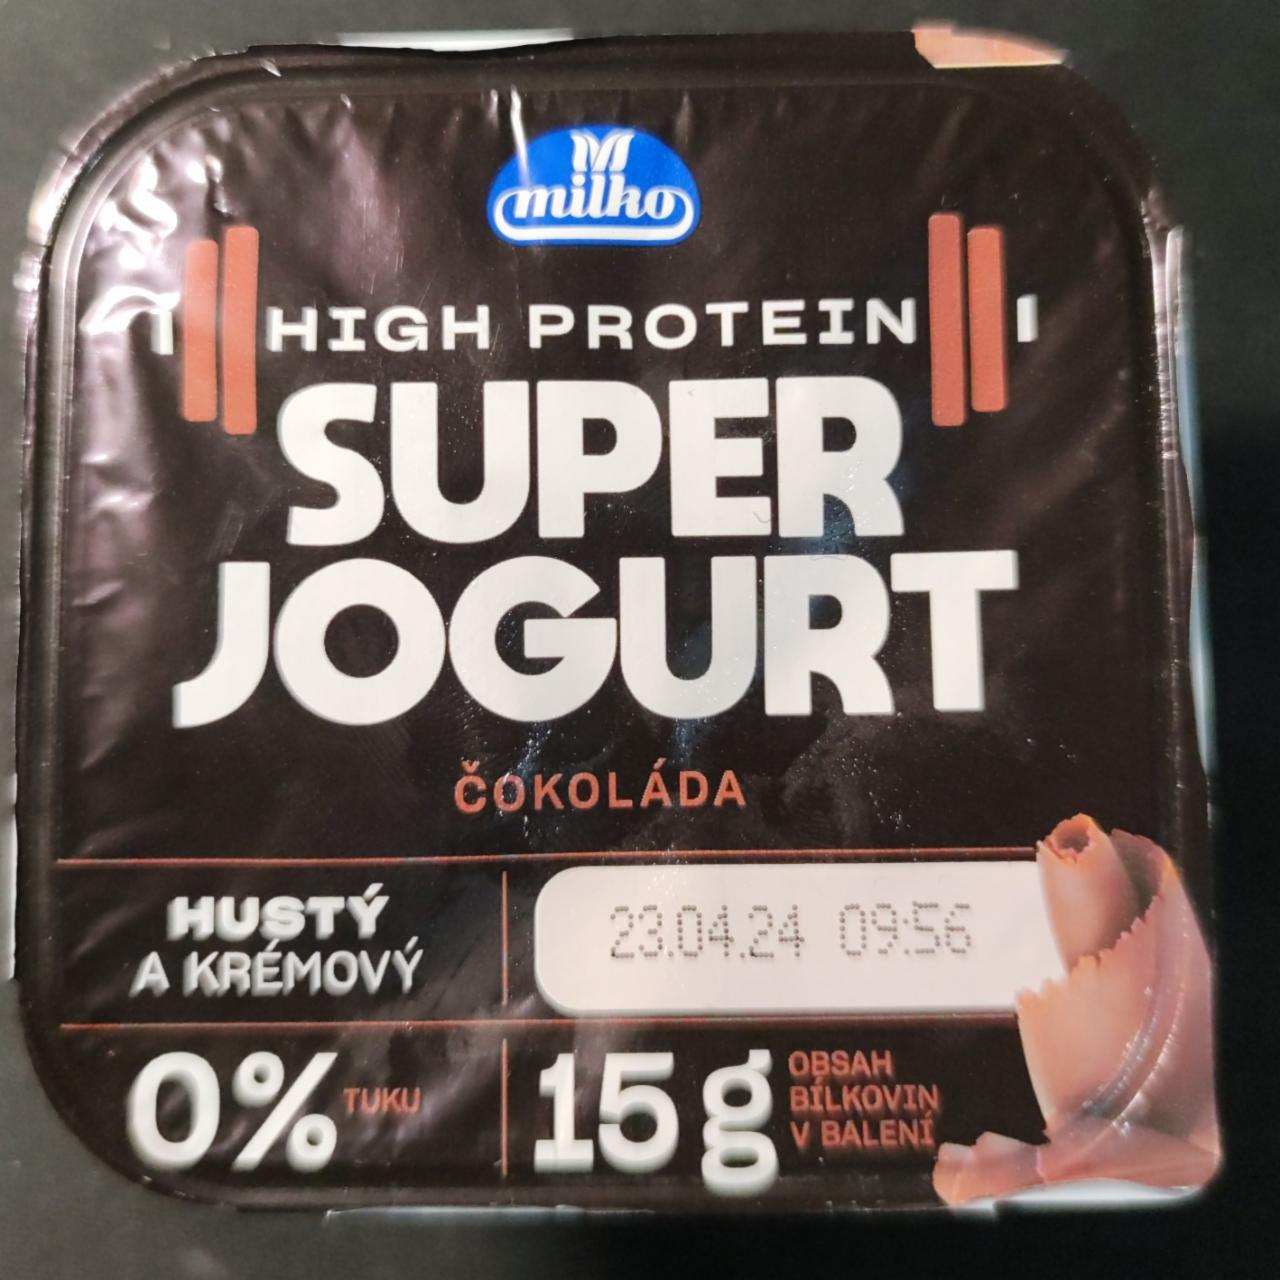 Képek - High protein super jogurt Čokoláda Milko